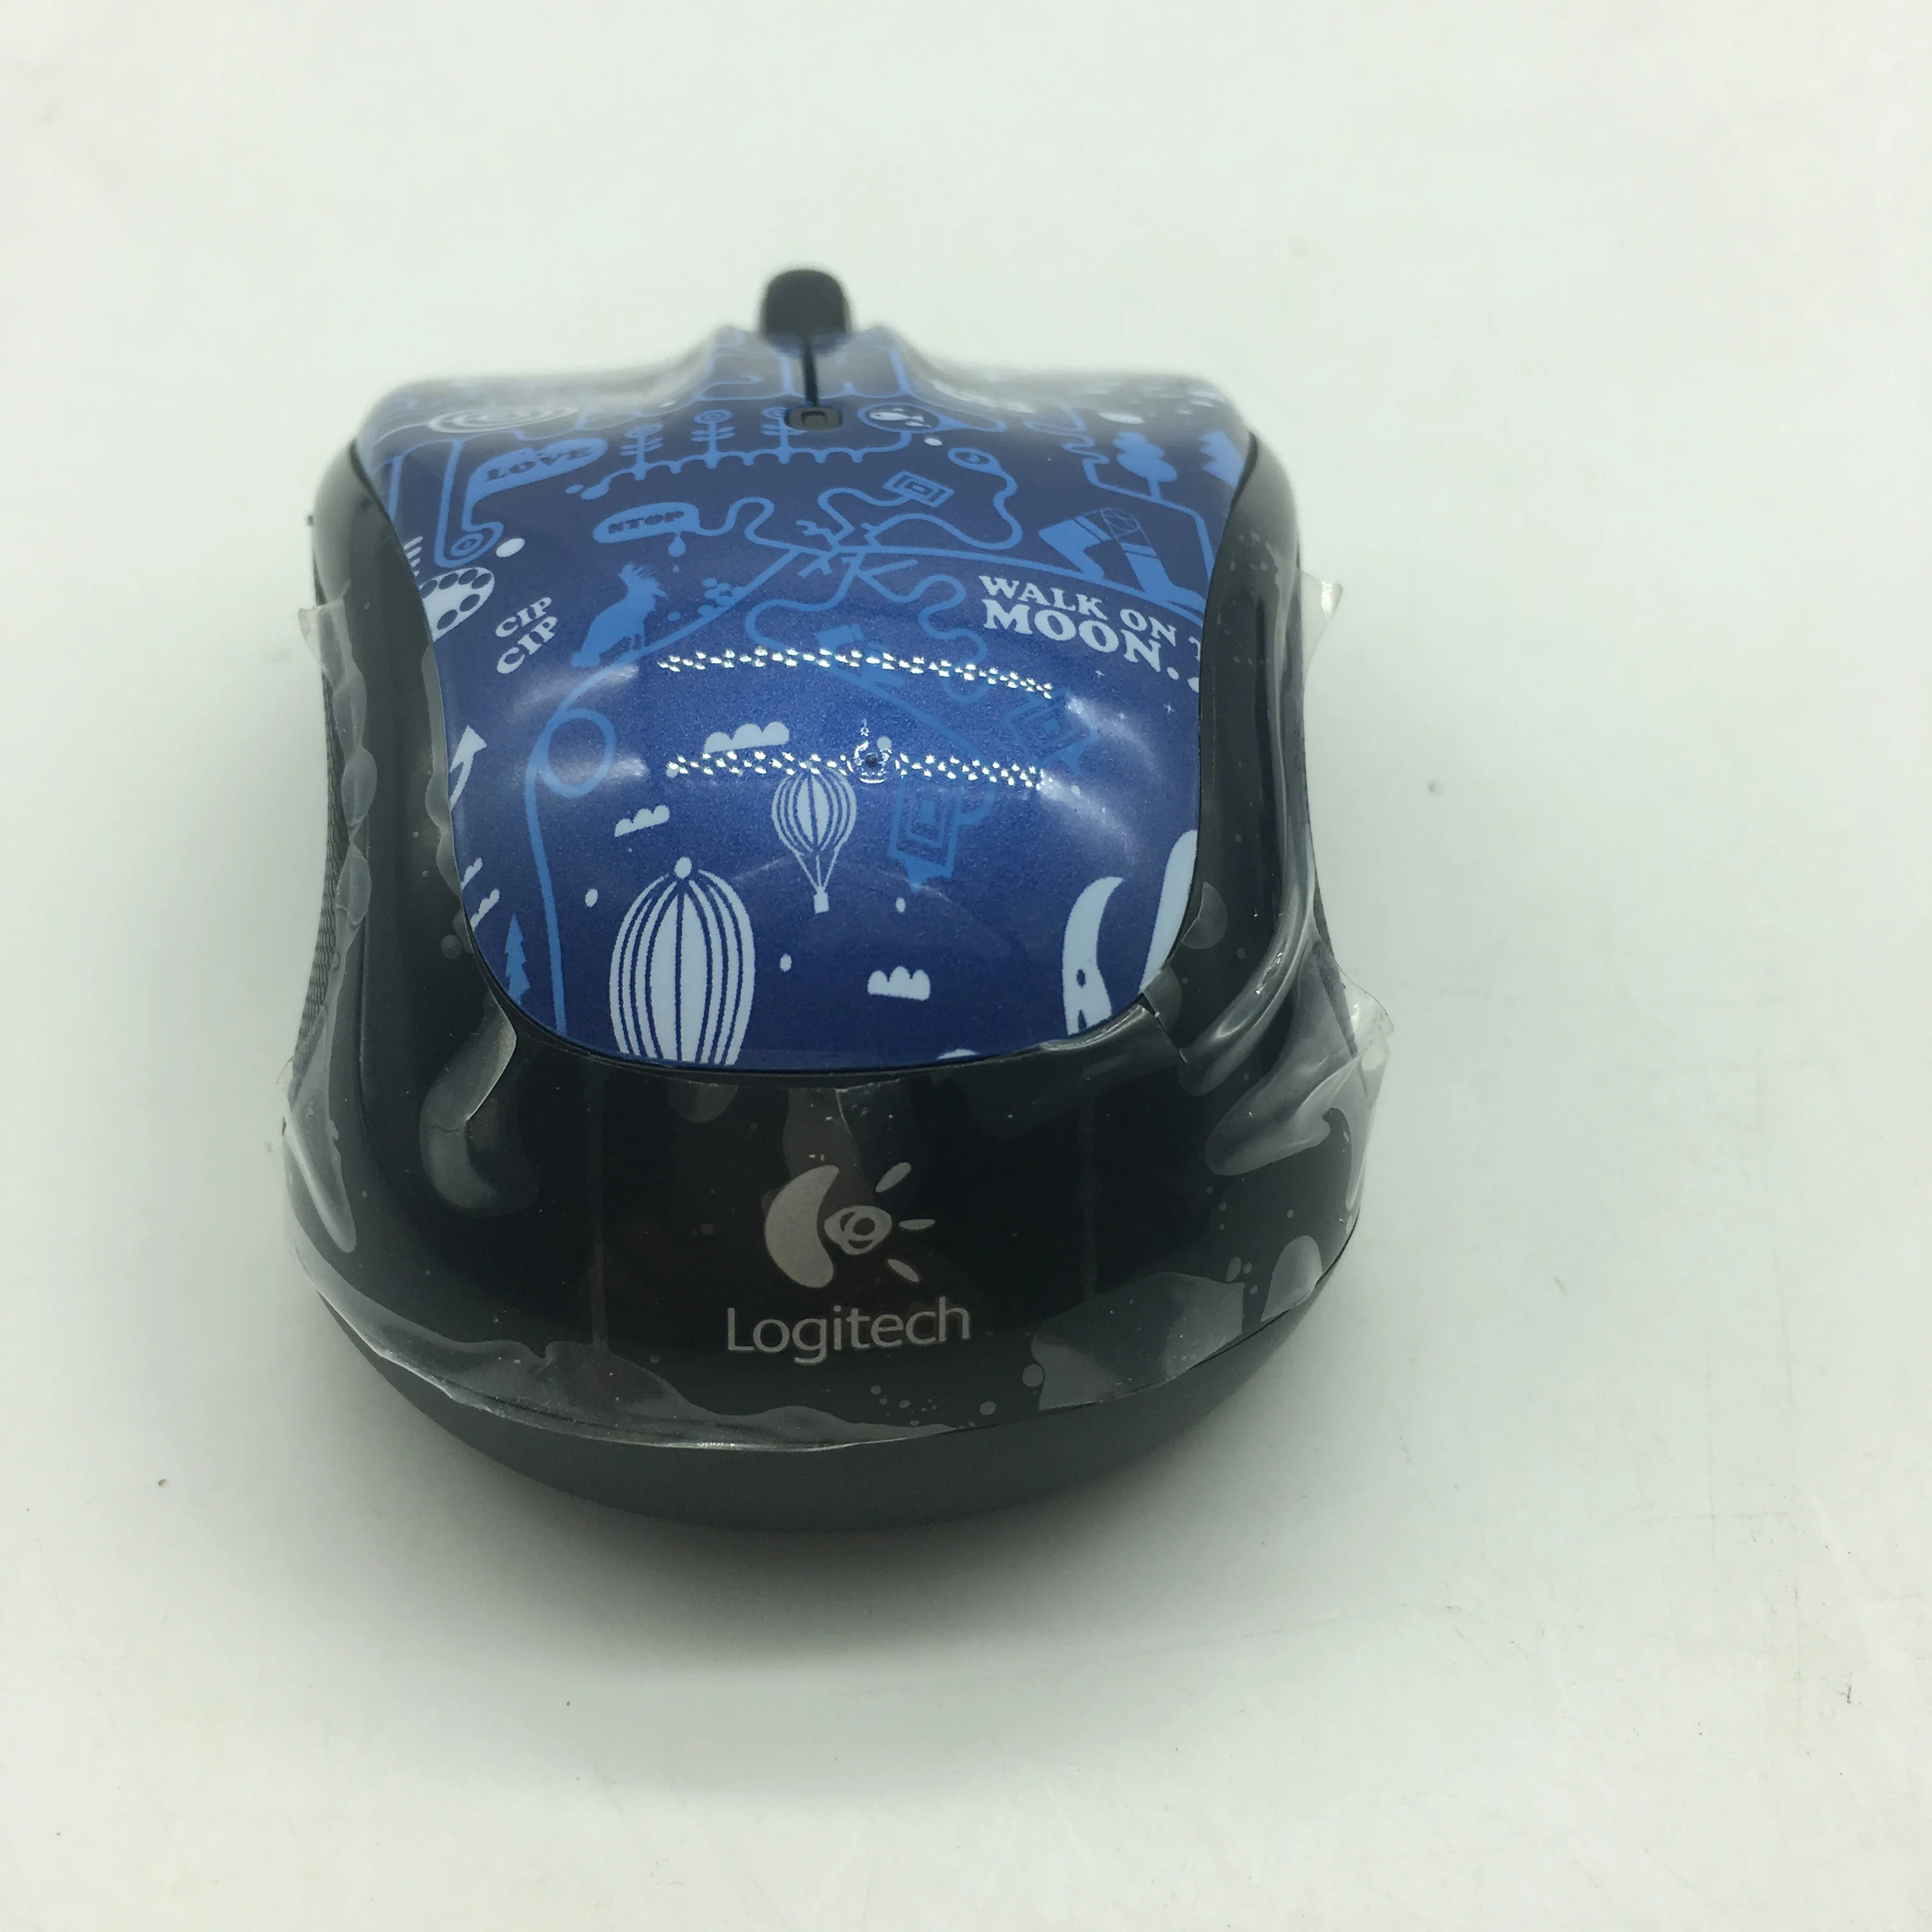 Беспроводная USB мышь с 3 кнопками 1000 dpi 2,4 GHz Unifying Receiver эргономичная оптическая мышь